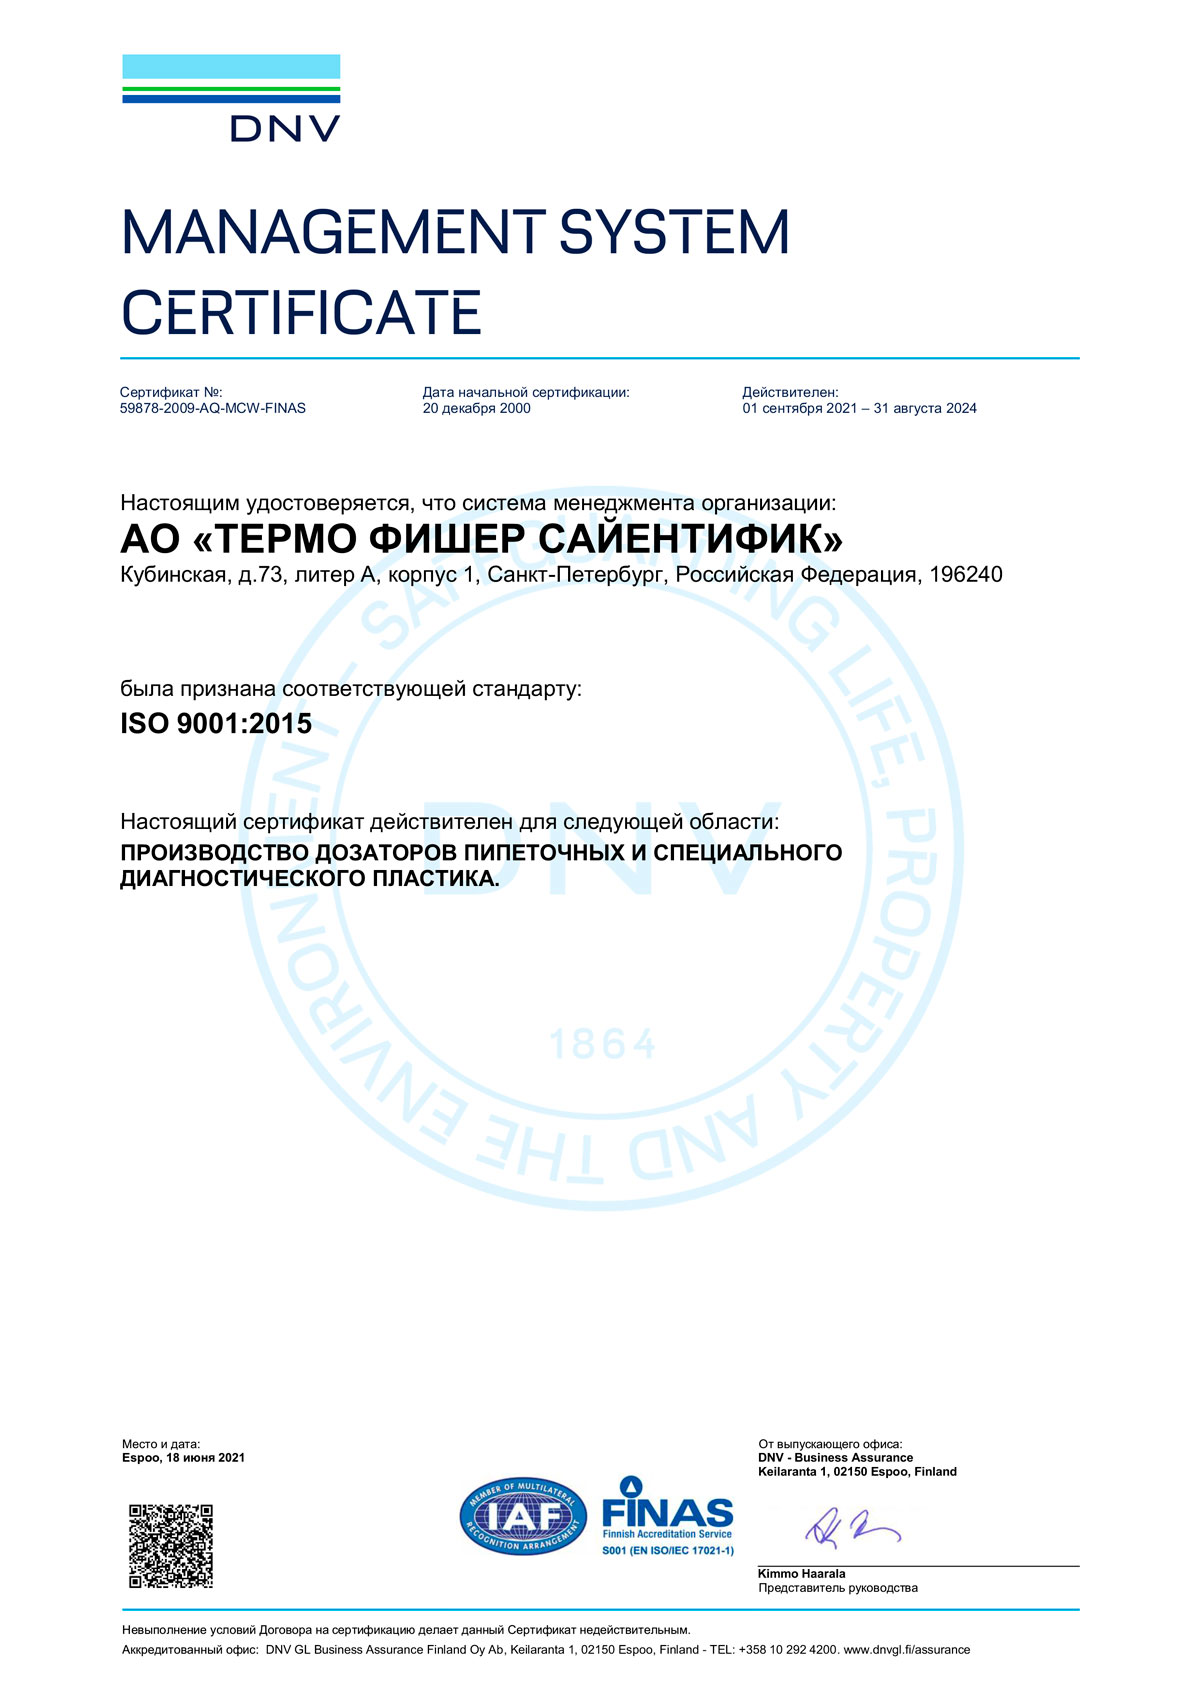 Дозаторы-и-принадлежности.-АО-Термо-Фишер-Сайентифик.-Сертификат-ISO-9001-2015.